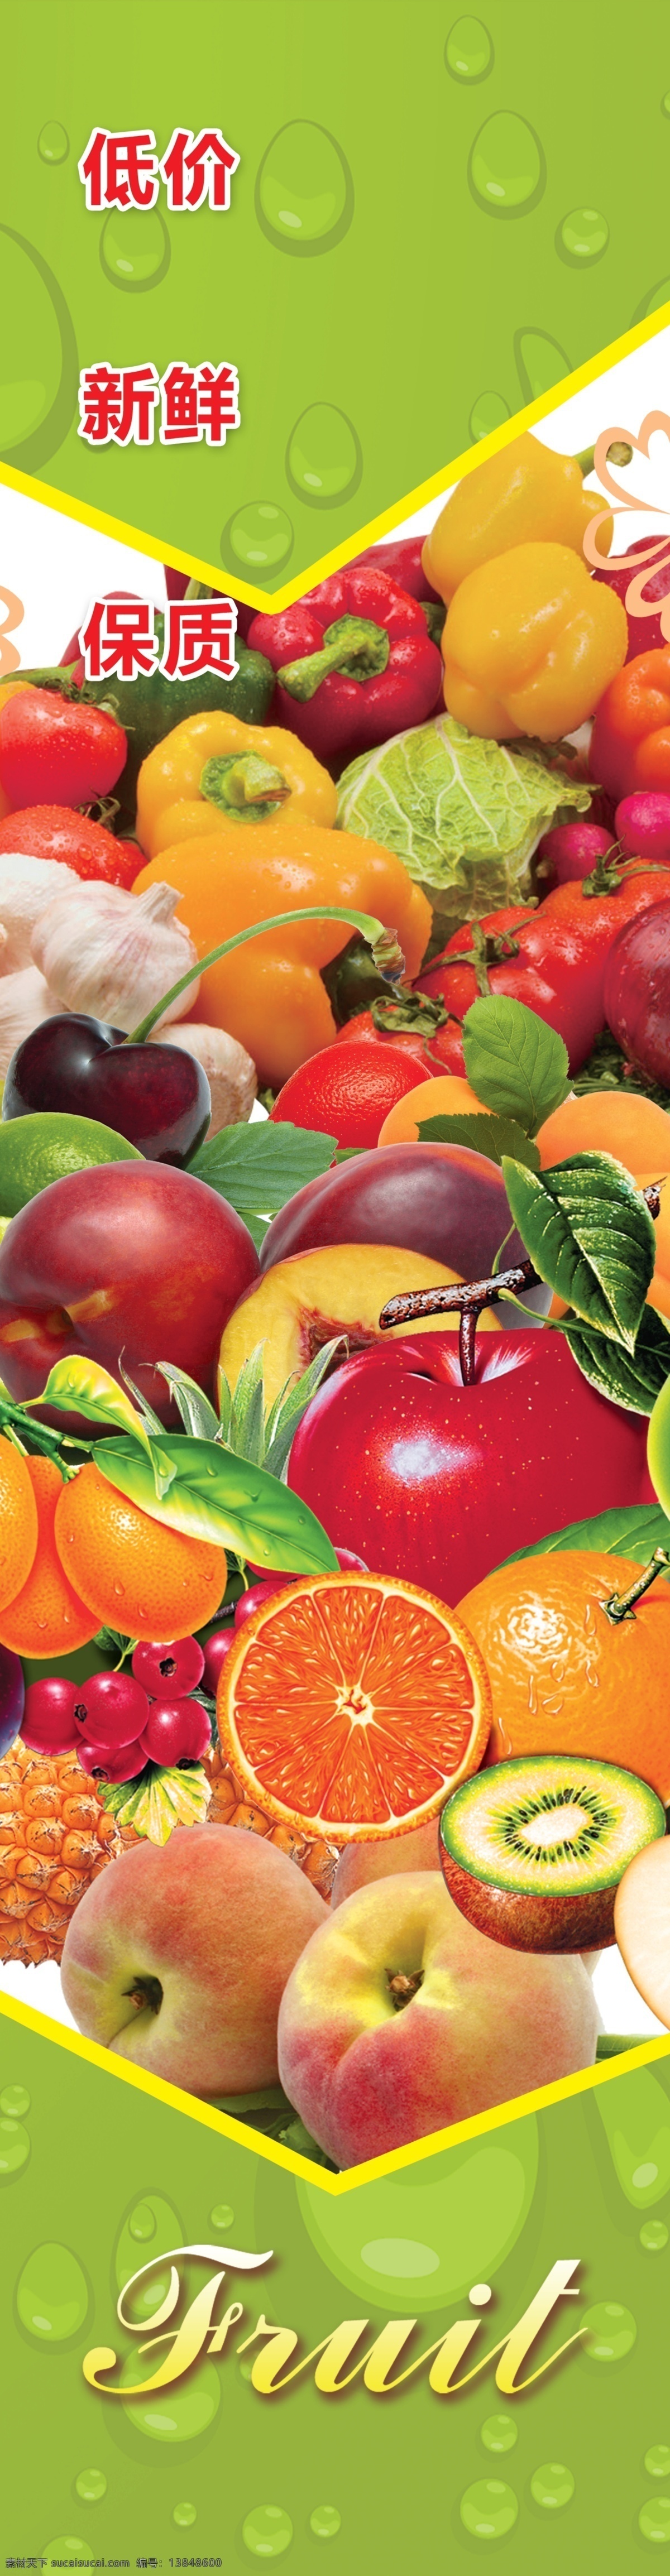 水果 低价 进口水果 新鲜 清新绿 水珠 蔬菜 苹果 桃子 橙子 分层